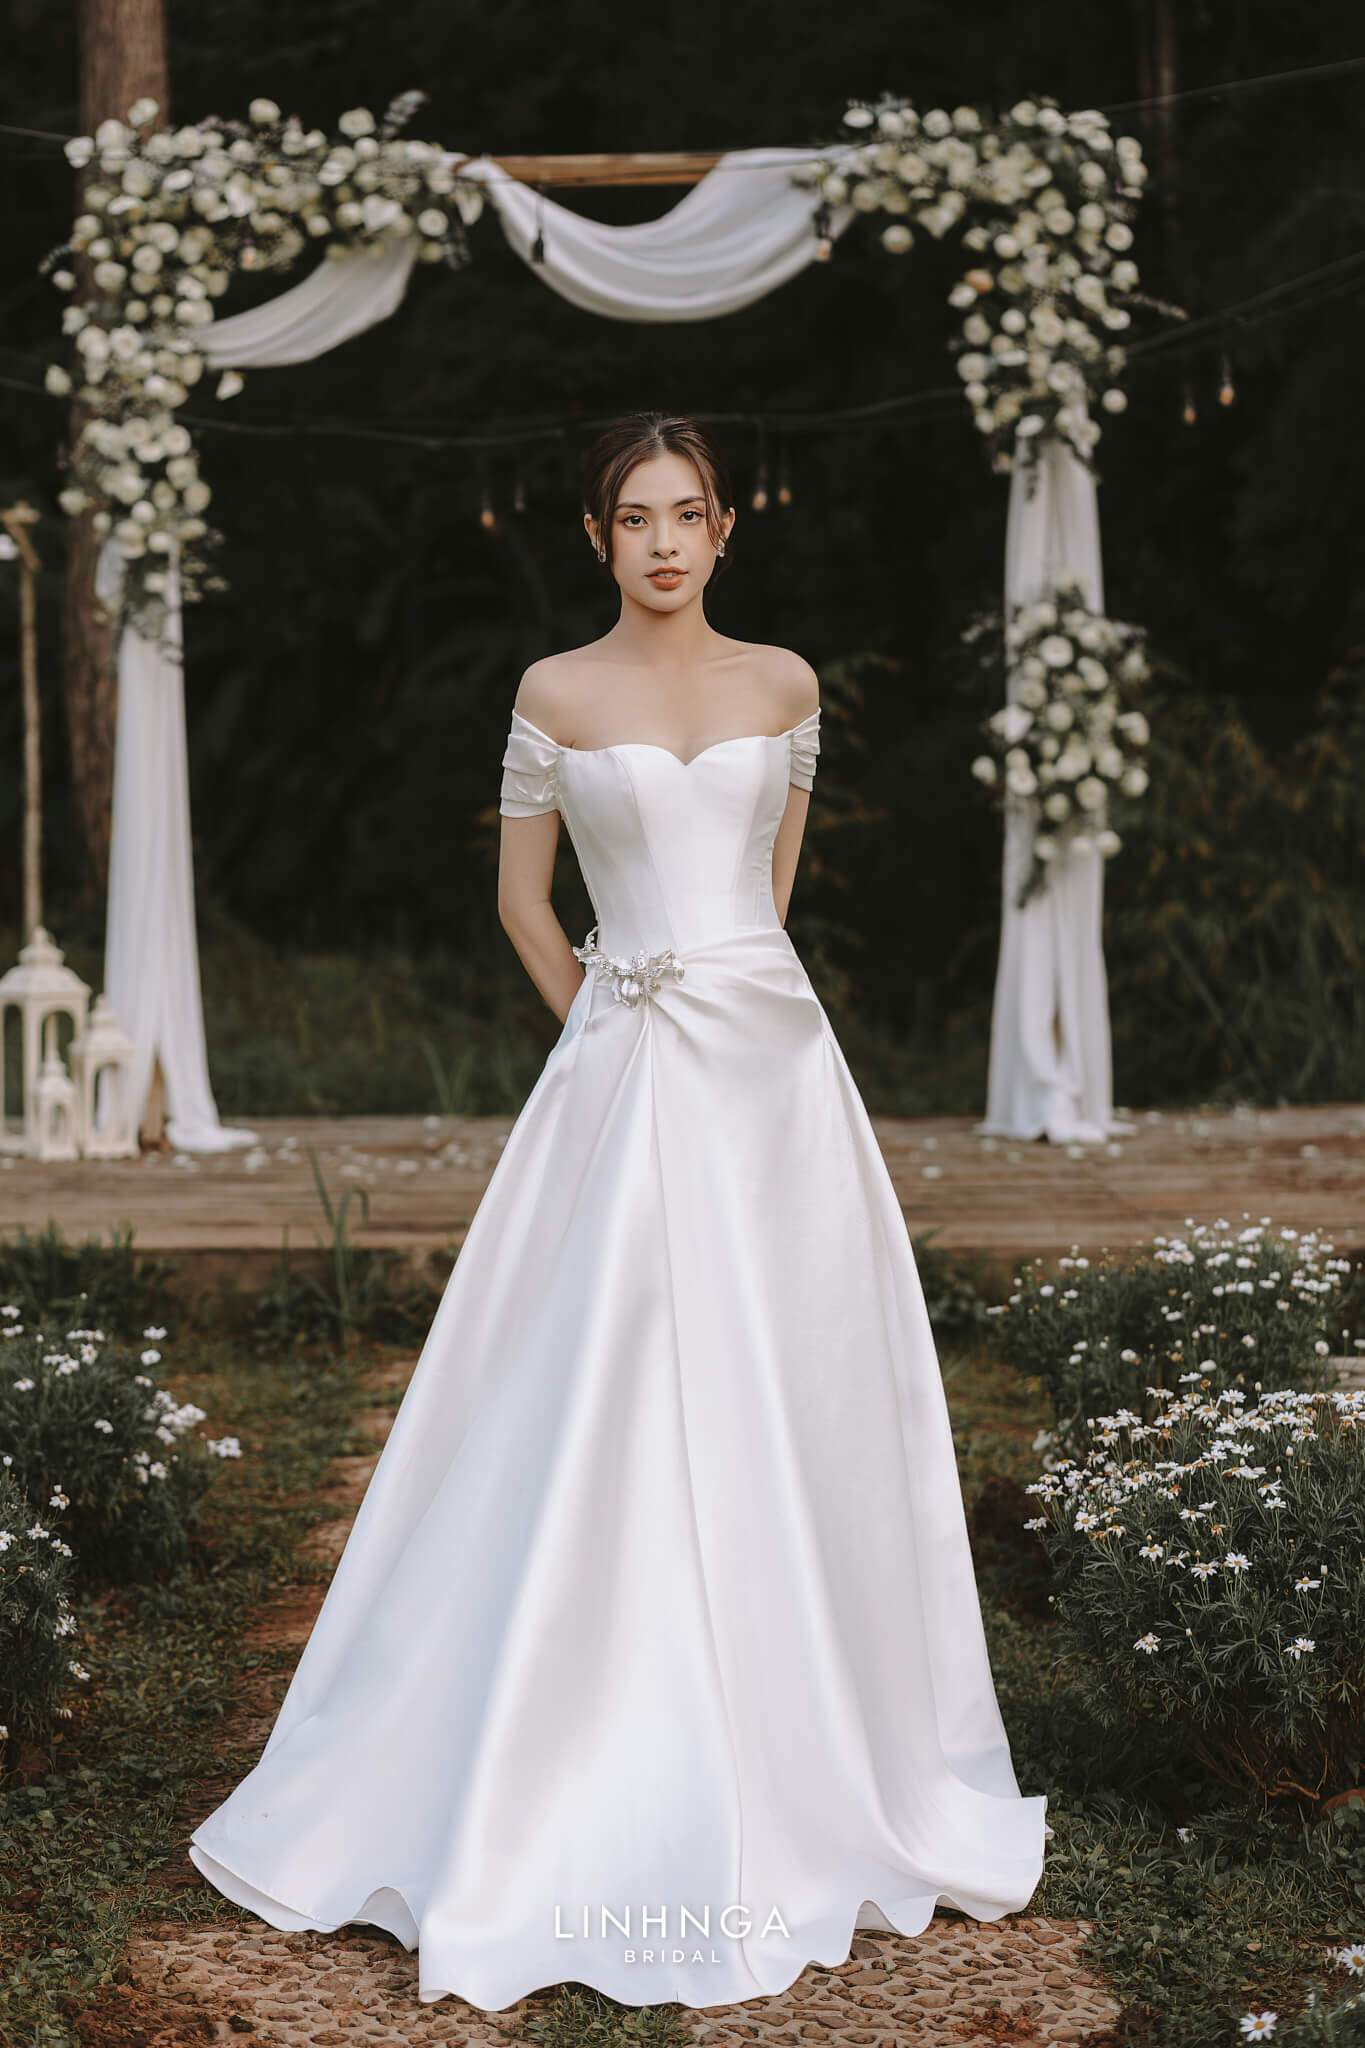 Váy cưới của 3 cô dâu tháng 11 Đông Nhi - Bảo Thy - Giang Hồng Ngọc: Người  dịu dàng, người lộng lẫy choáng ngợp, người chẳng ngại sexy